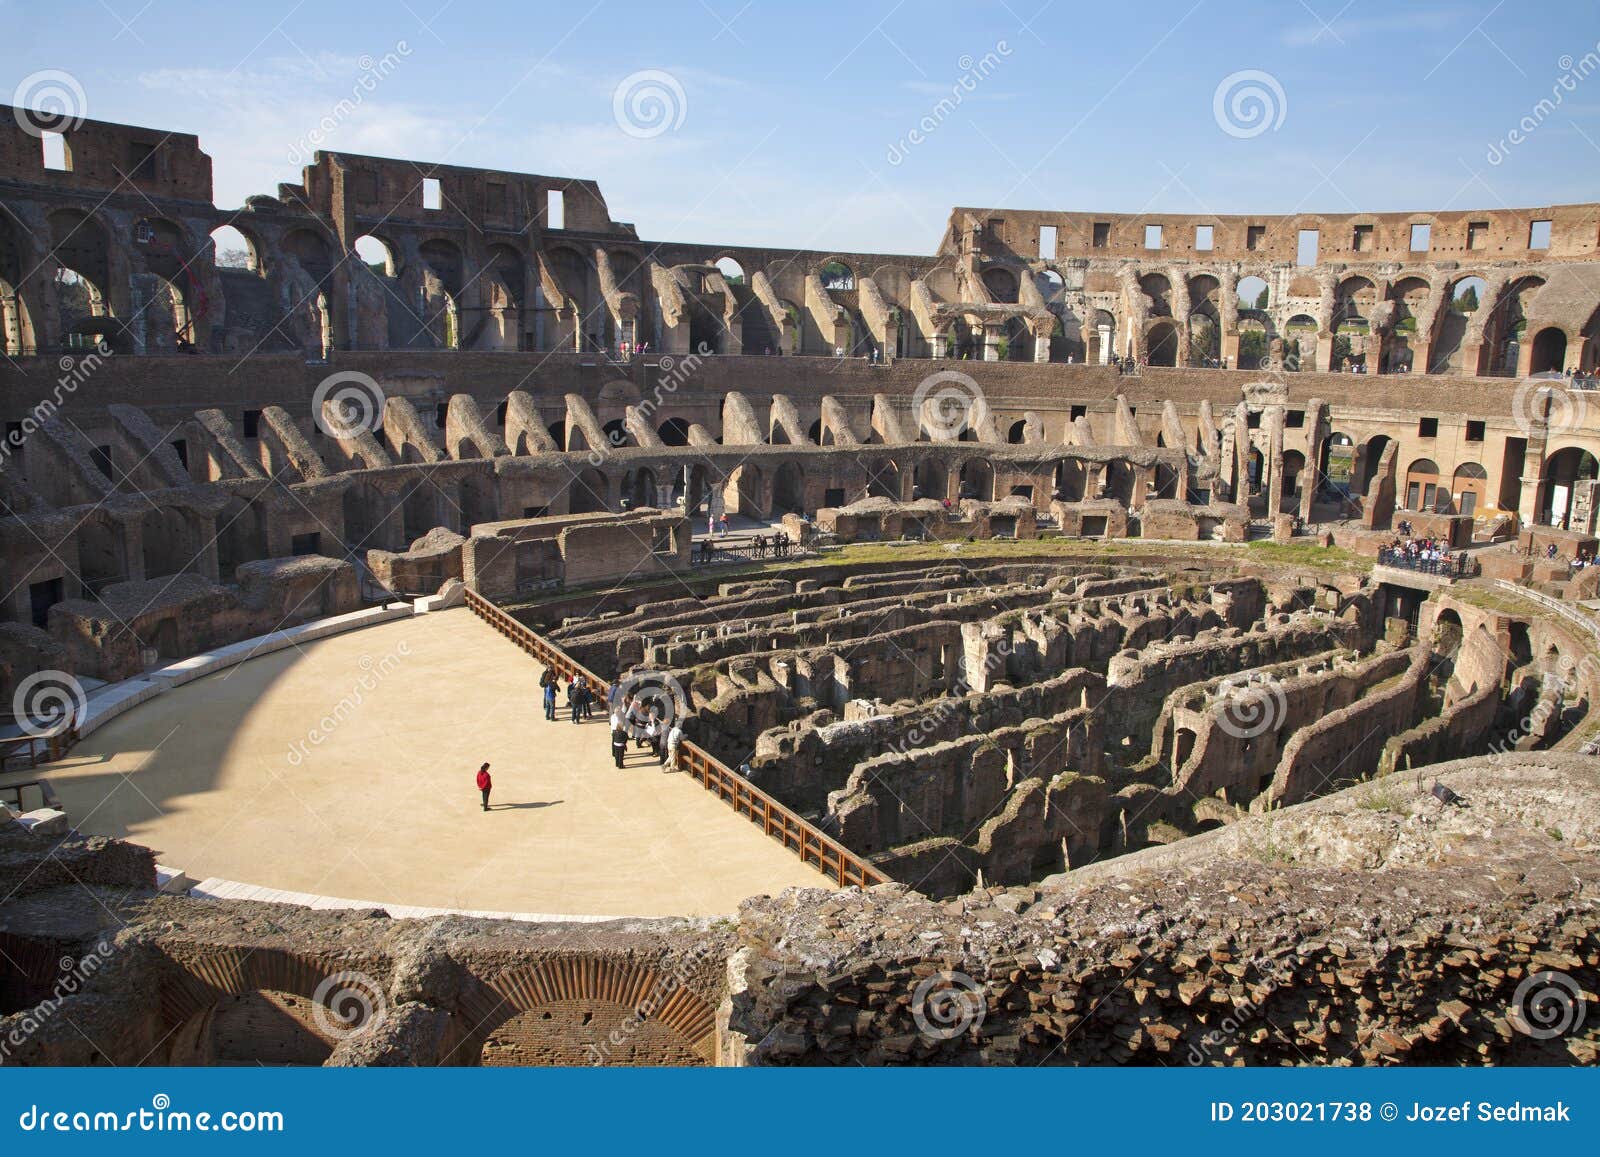 Почему стены Римского Колизея пронизаны дырами, как головка сыра: удивительные факты